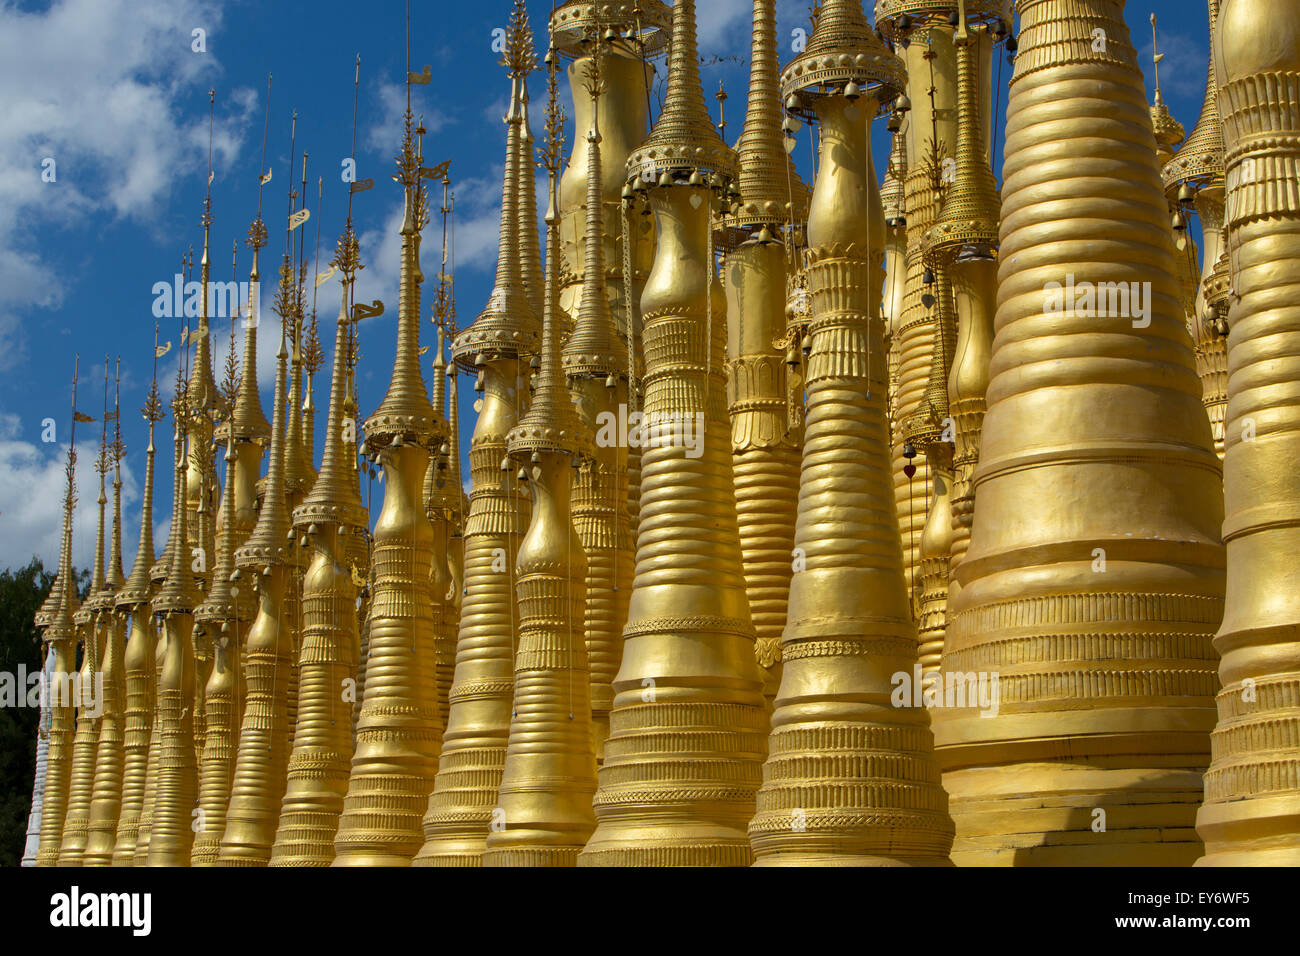 Inn Thein monastery gold stupas, Inle Lake, Myanmar Stock Photo